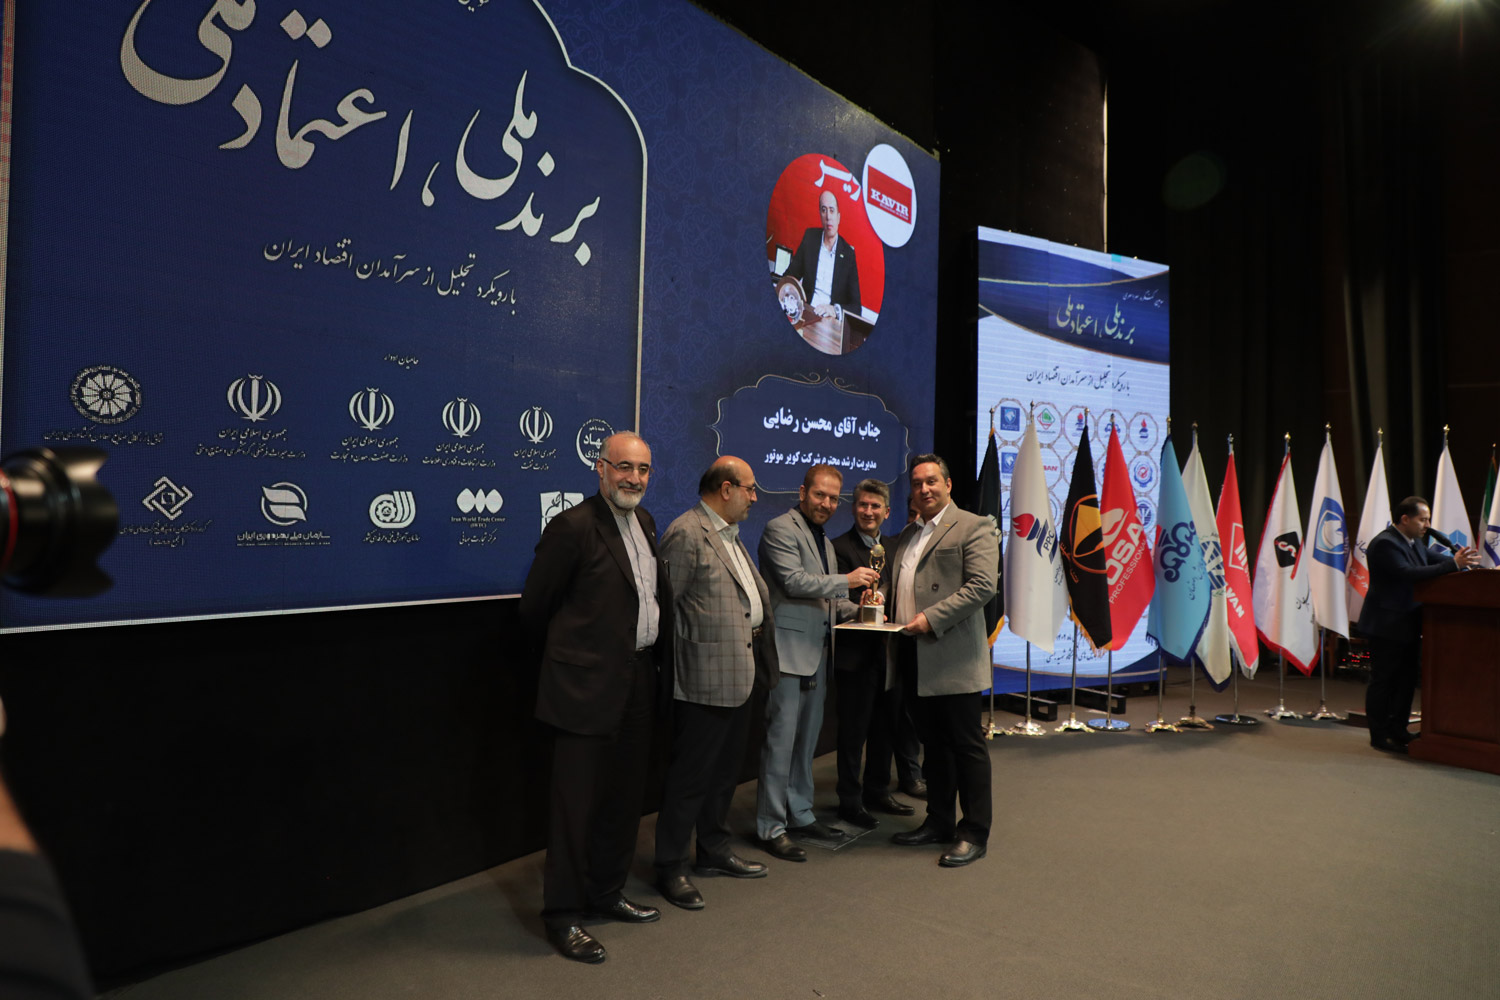 اعتماد ملی به کویرموتور در سومین کنگره سرآمدان اقتصاد ایران